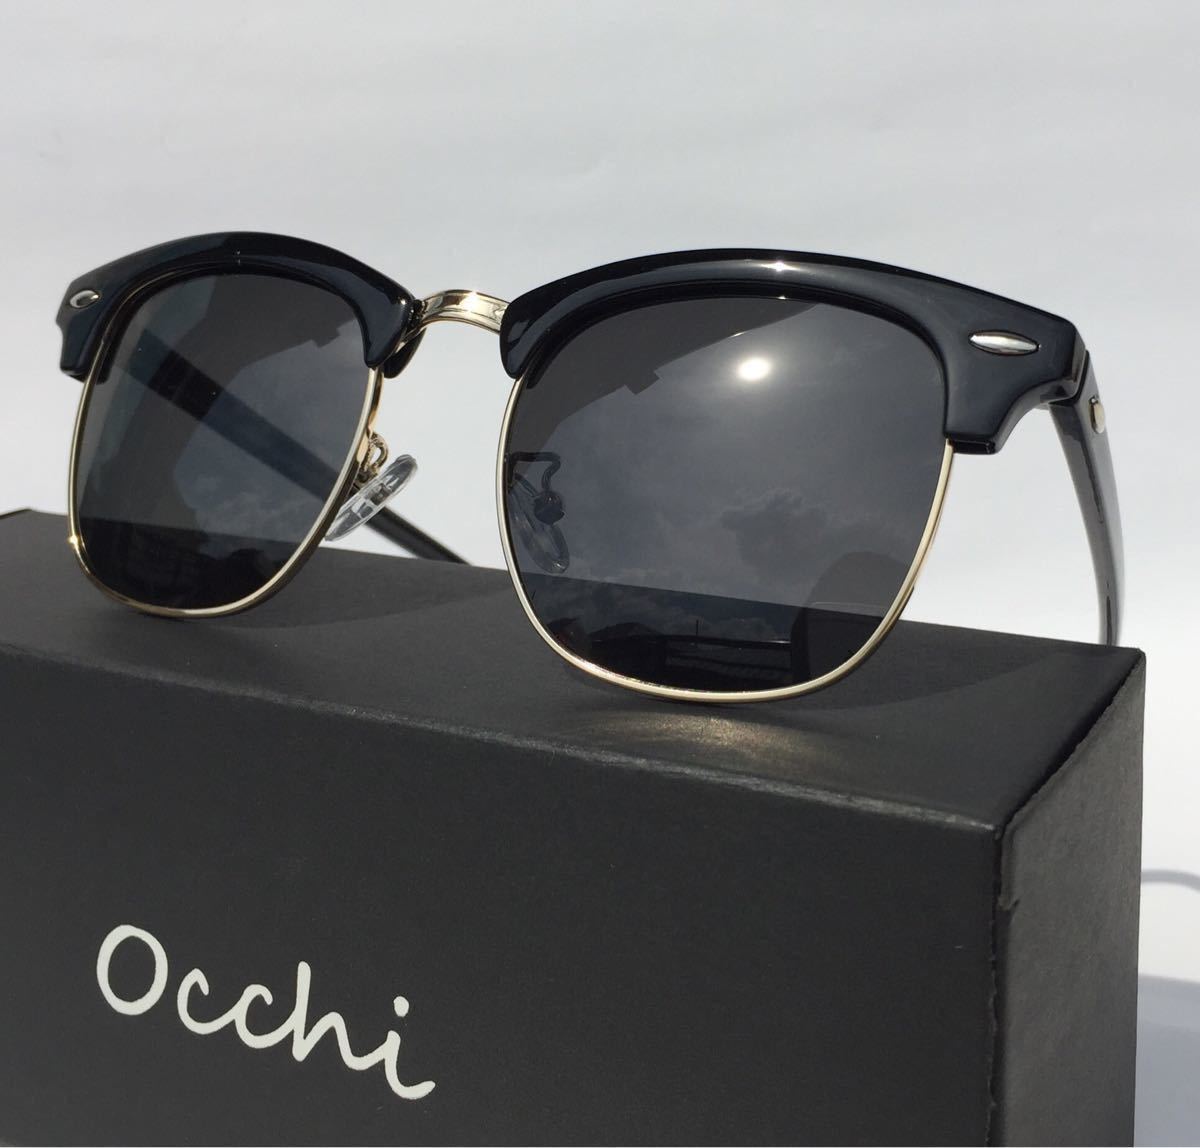 新品 OCCHI 偏光サングラス サーモント型 UV400 軽量  ブラック